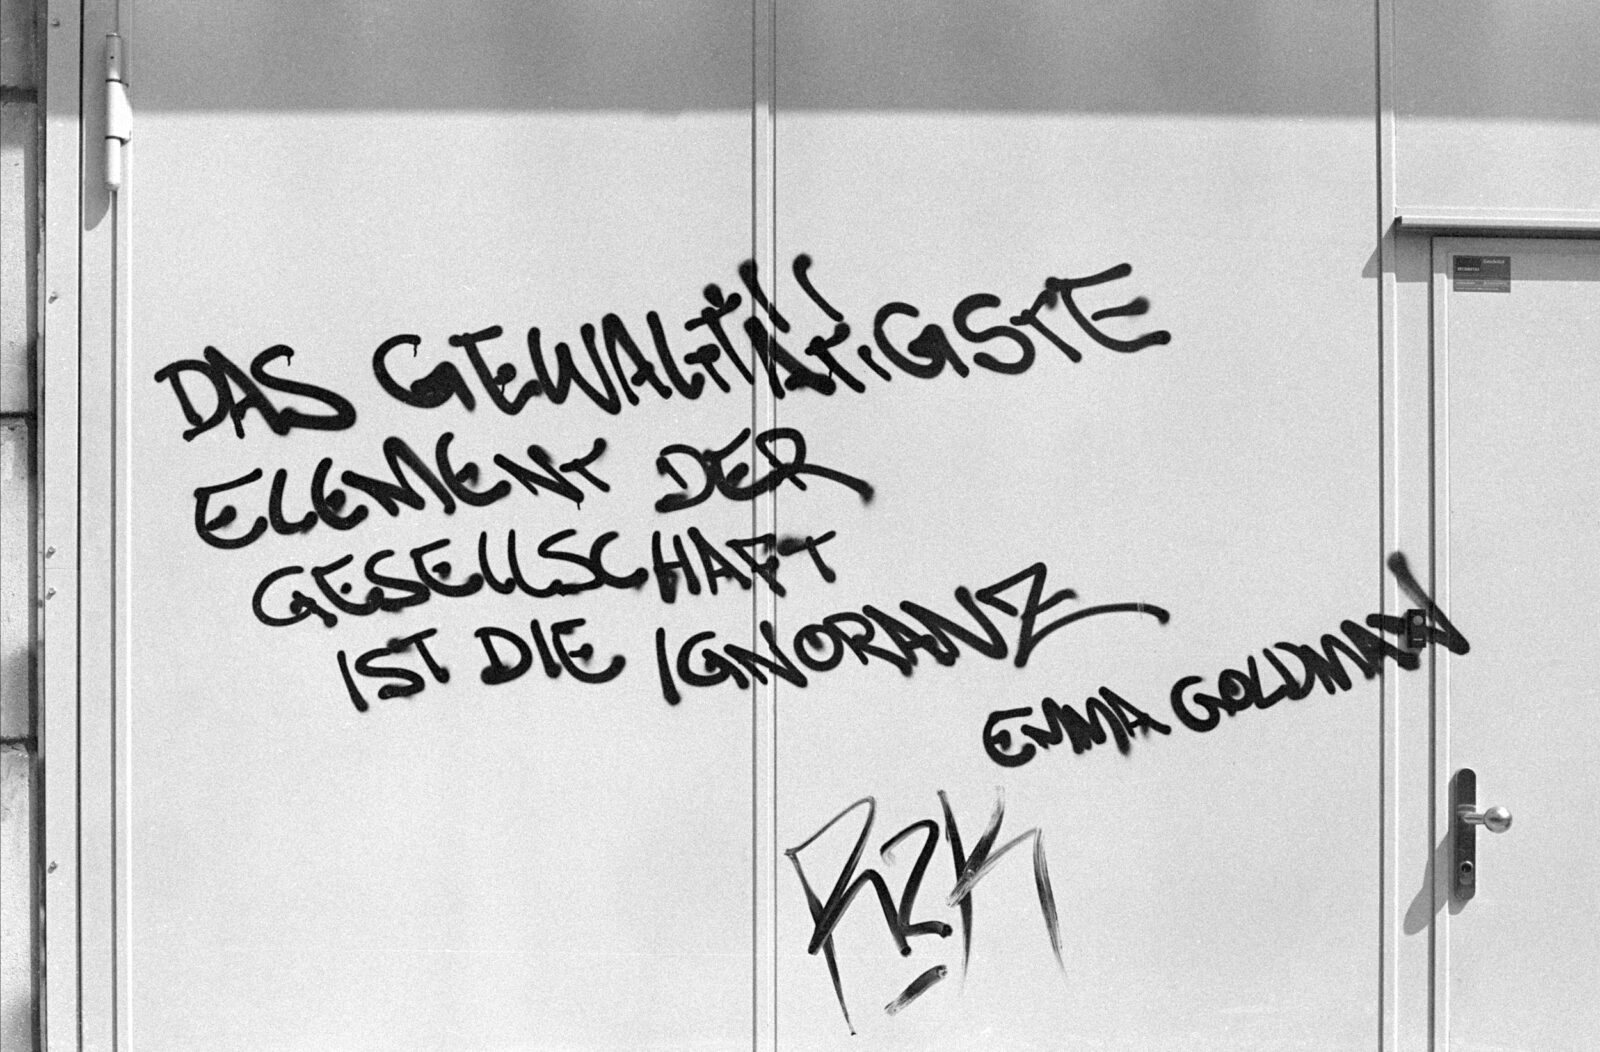 An eine Tür wurde mit Sprühfarbe geschrieben: Das gewalttätigste Element der Gesellscahft ist die Ignoranz. Emma Goldman